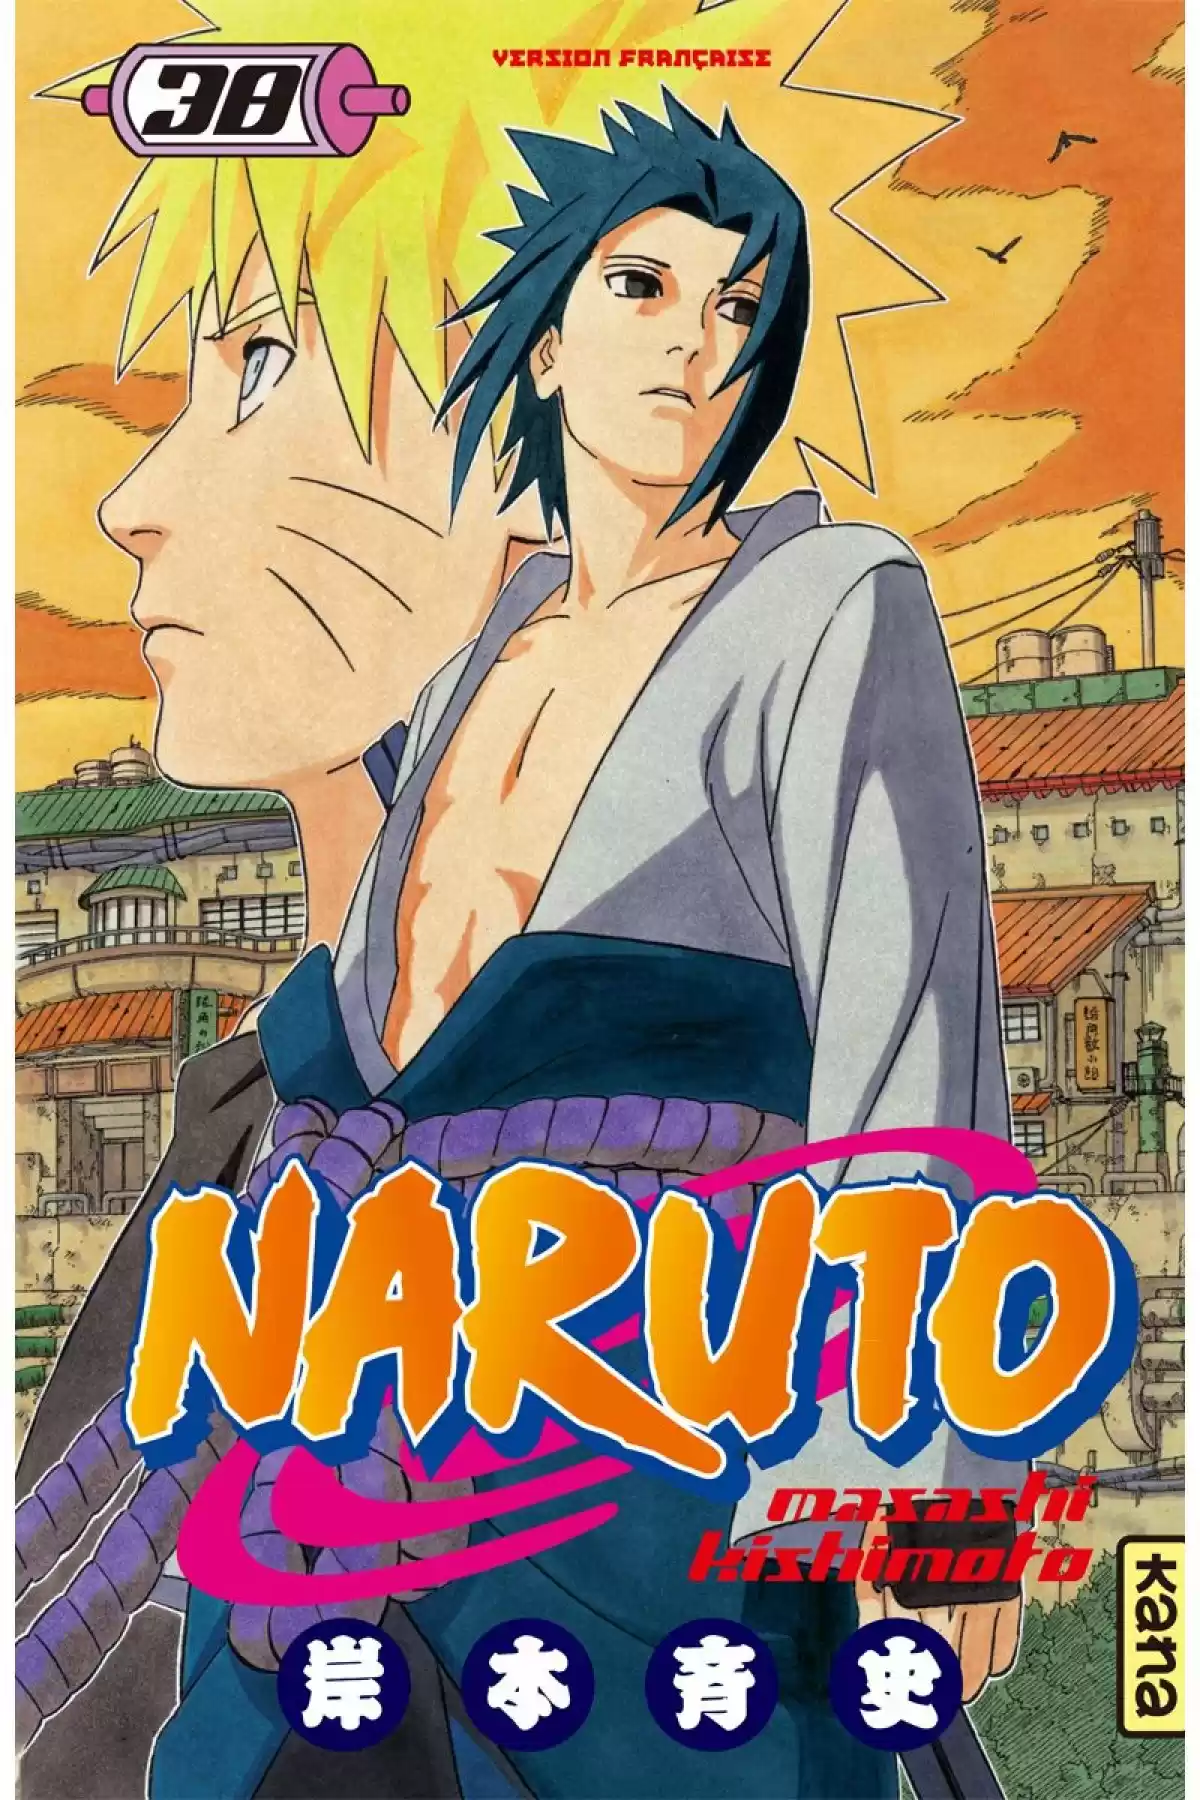 Naruto Volume 38 page 1